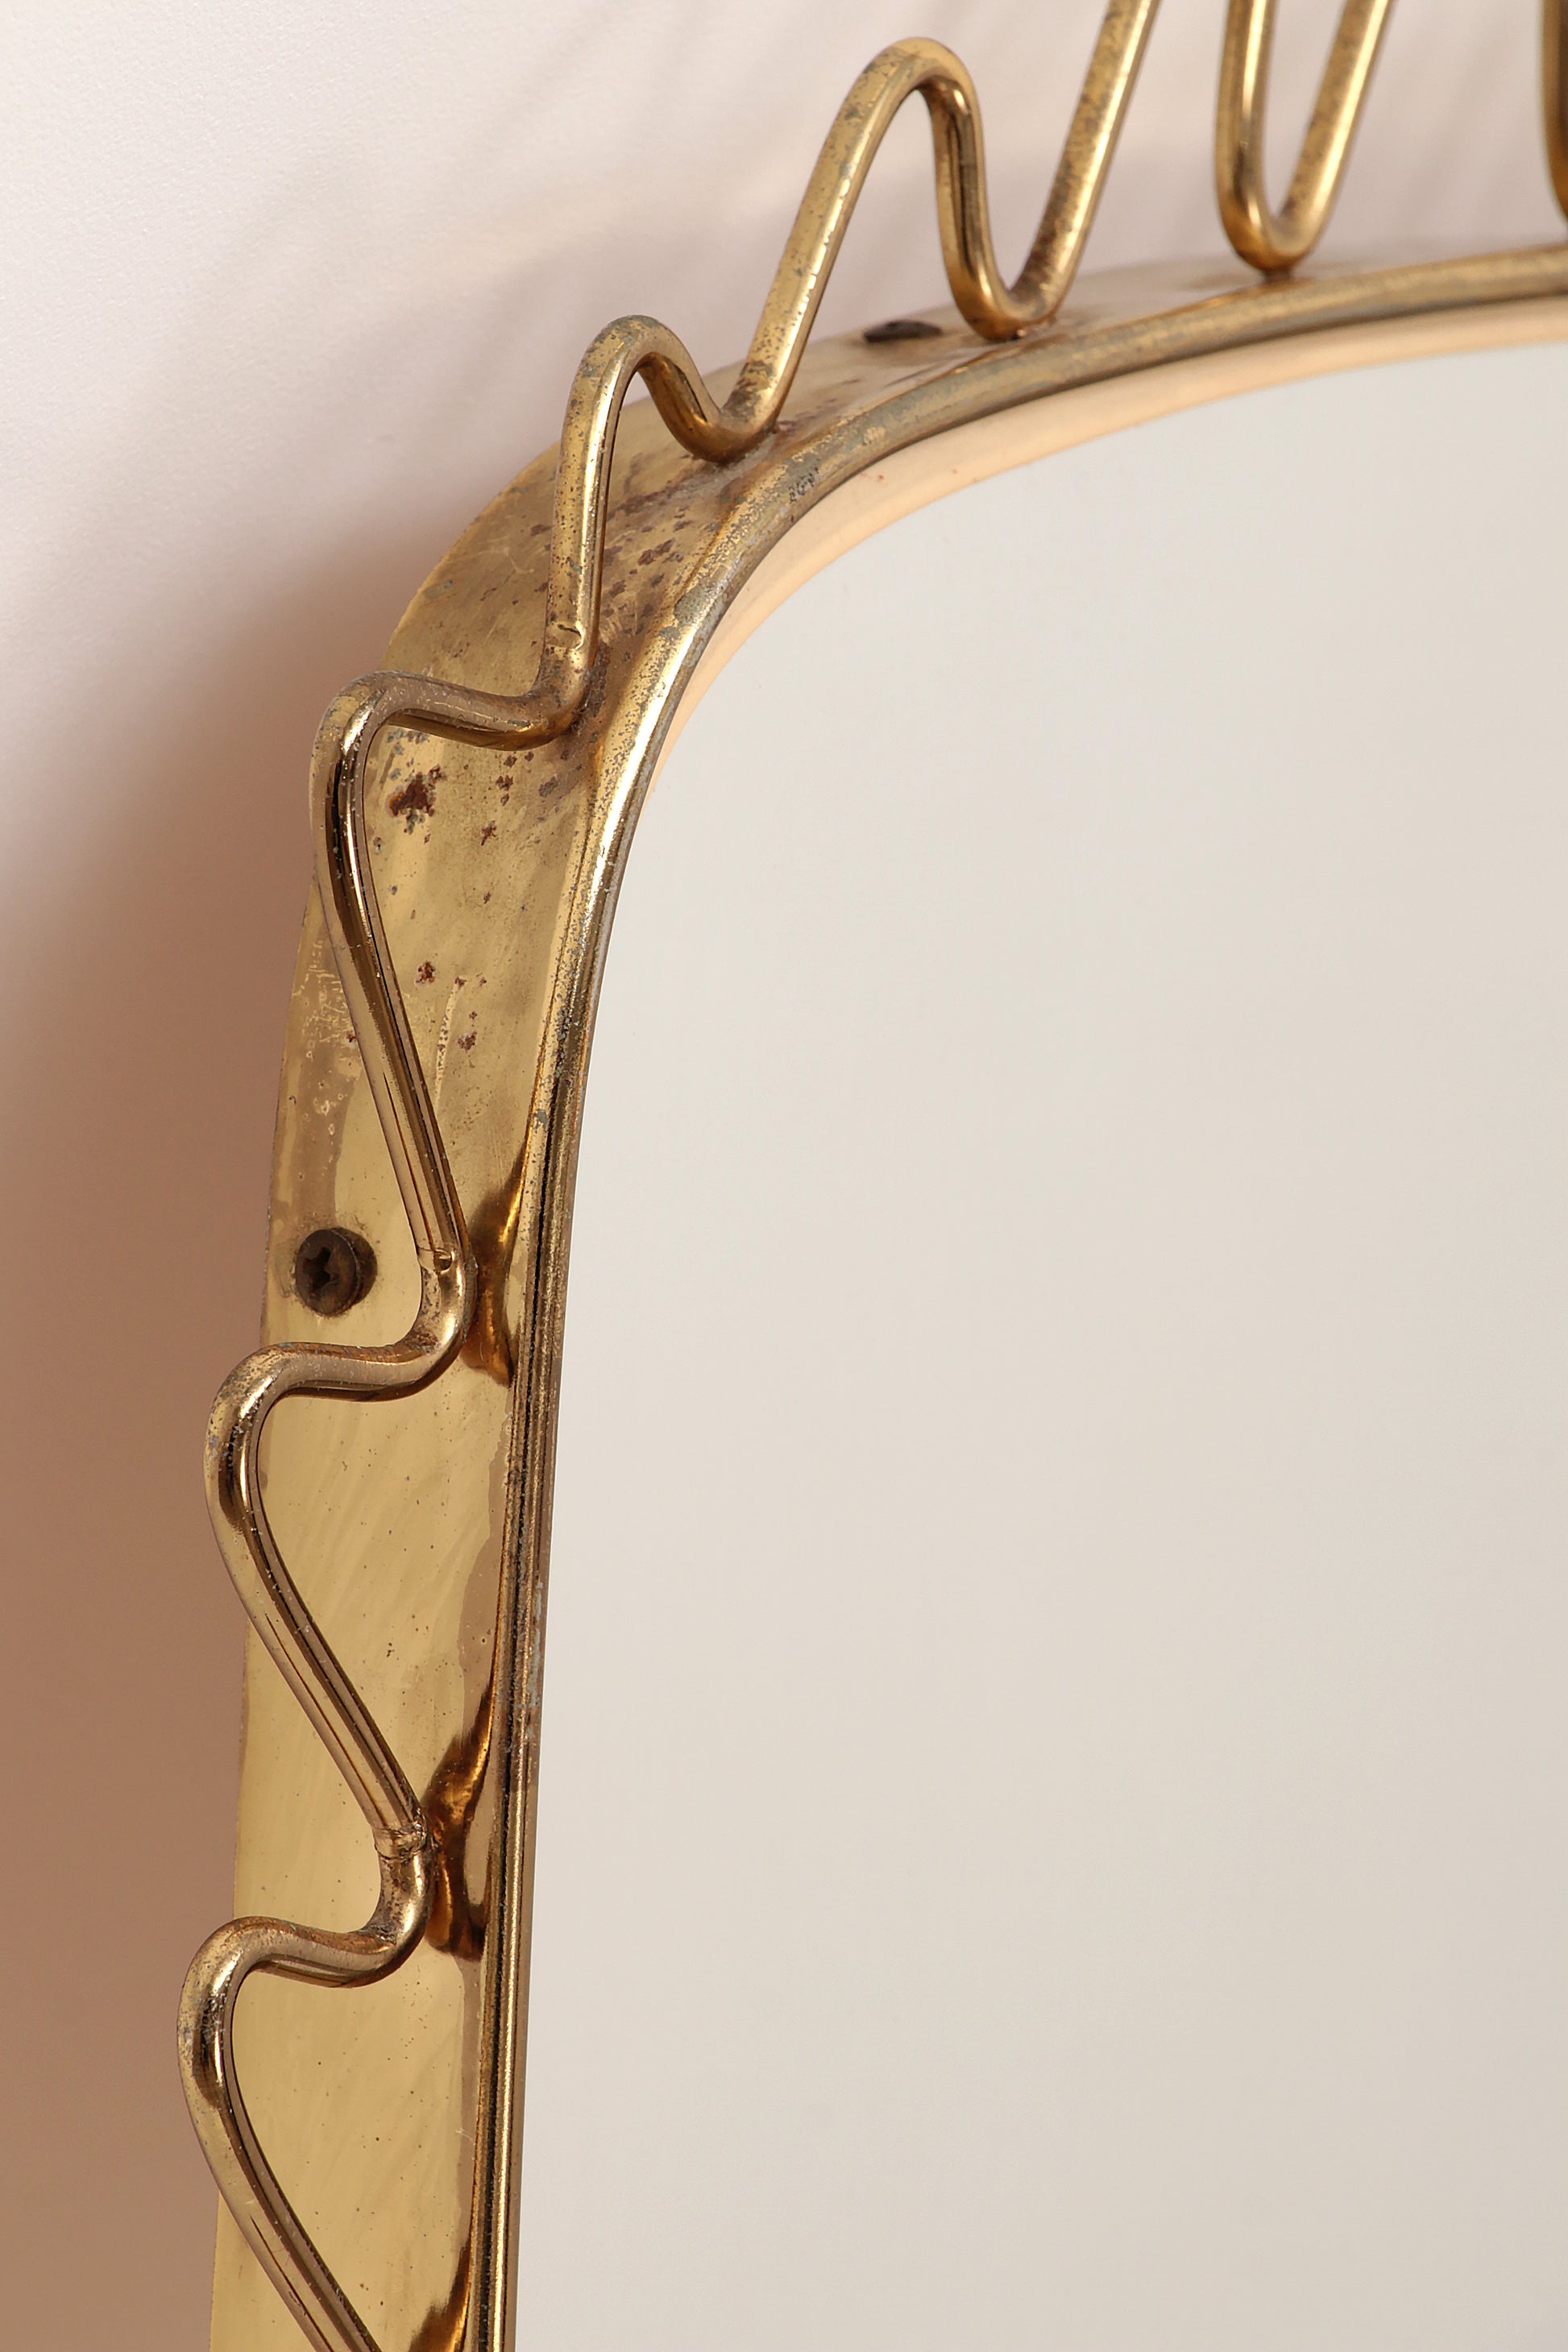 Vintage Langwerpige spiegel met sierlijke messing rand, jaren60.